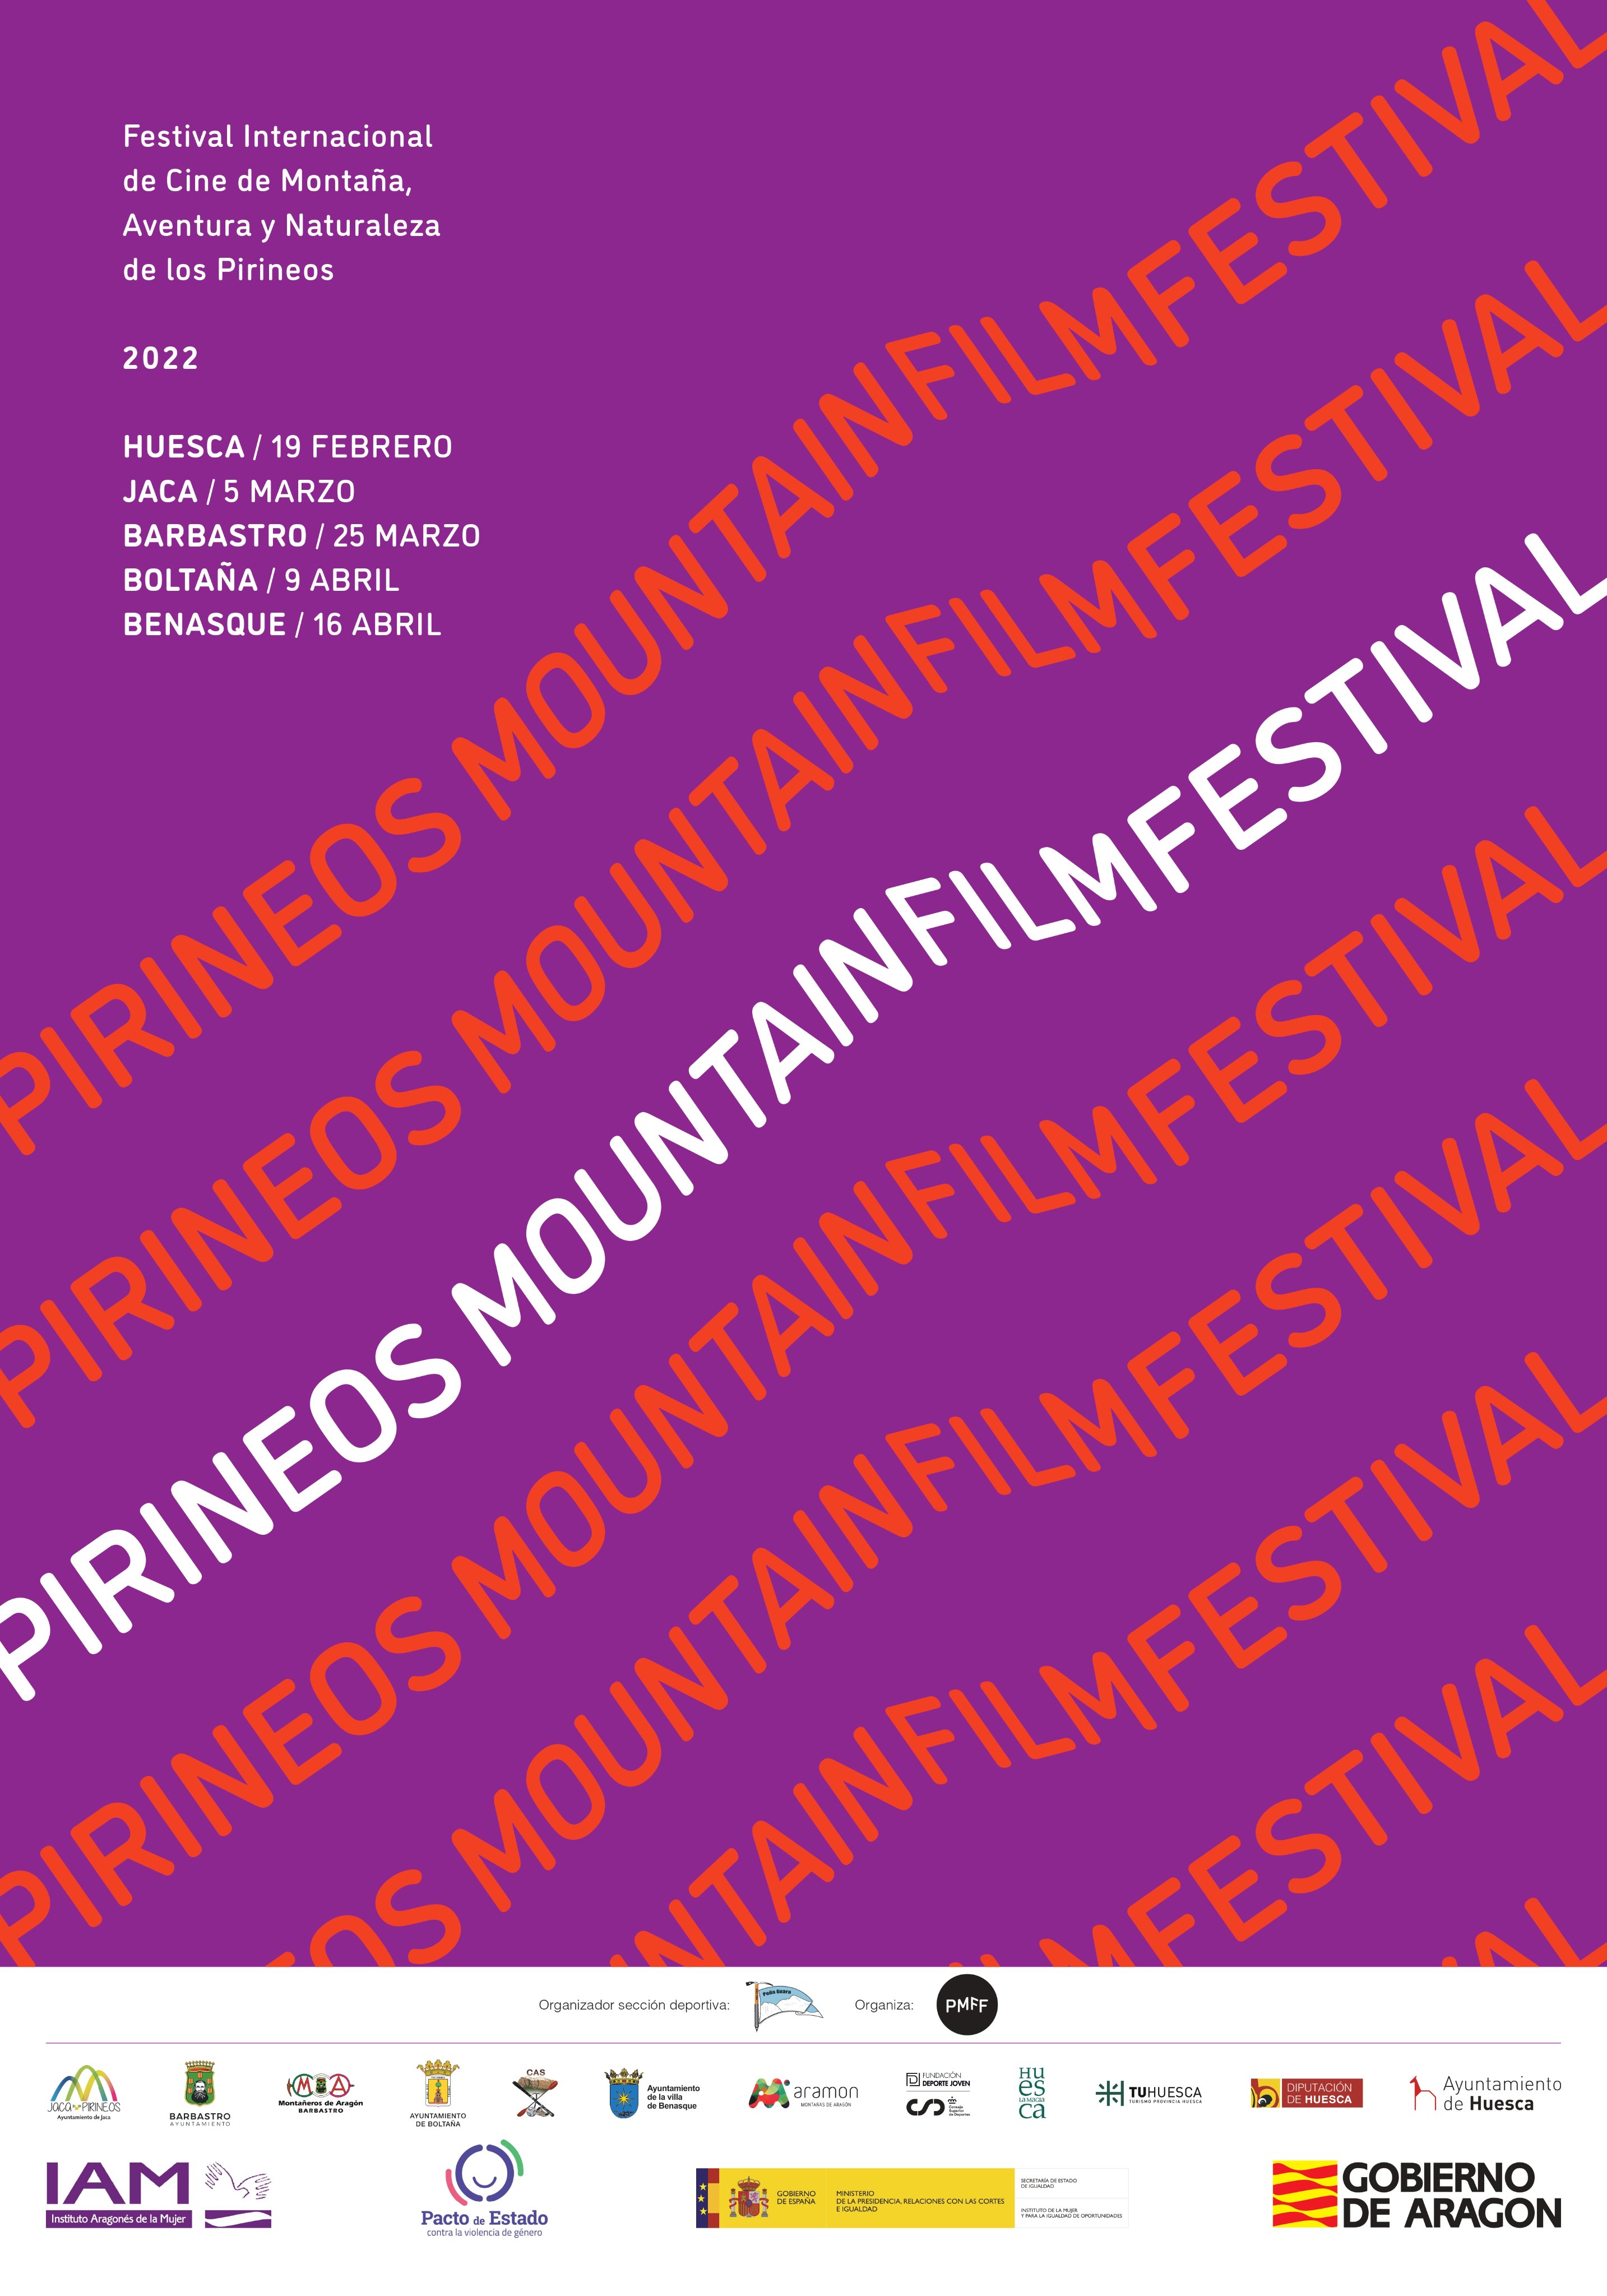 Nace el Pirineos Mountain Film Festival como referente internacional para cortometrajes de montaa, aventura y naturaleza